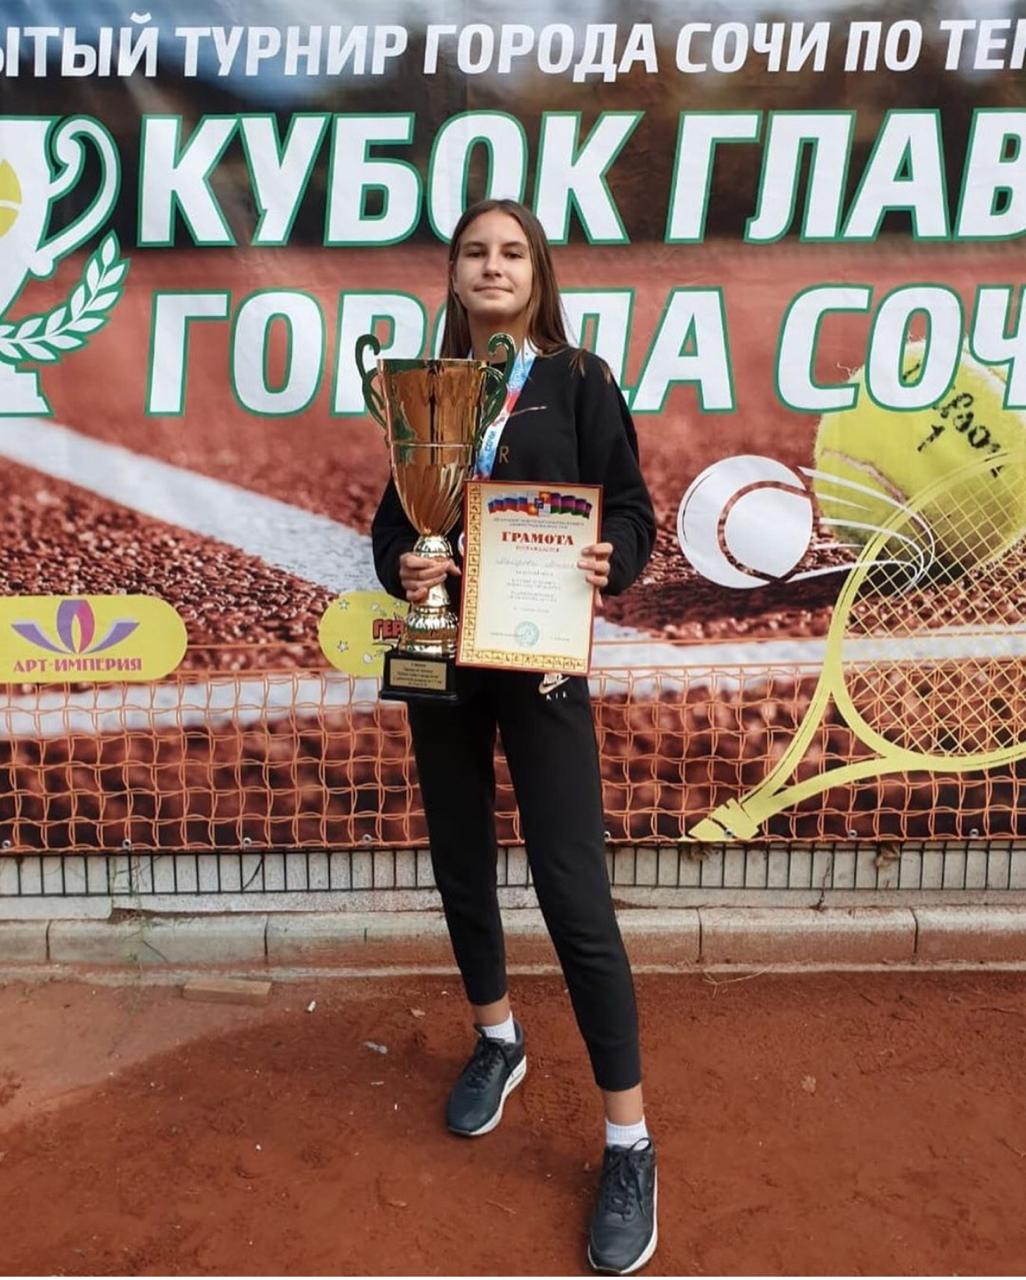 Майорова Милена  стала первой на Кубке в Сочи!